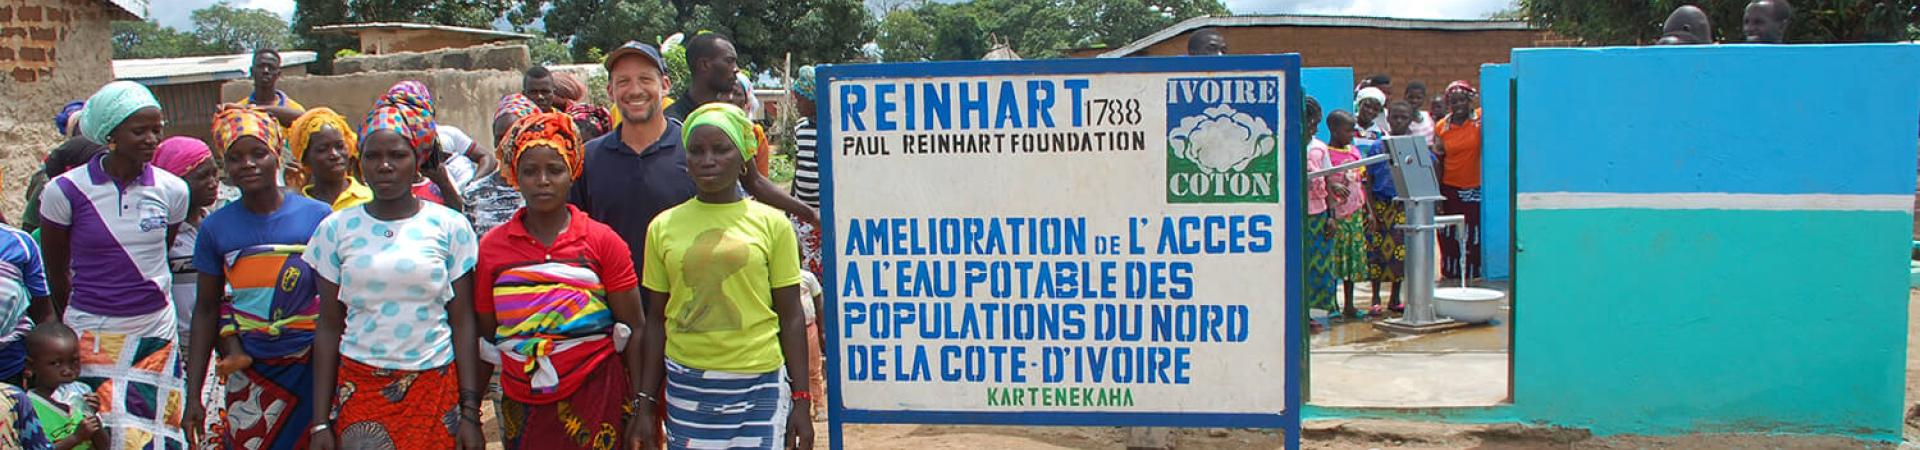 Amélioration de l’accès à l’eau potable des populations rurales du Nord de la Côte d’Ivoire